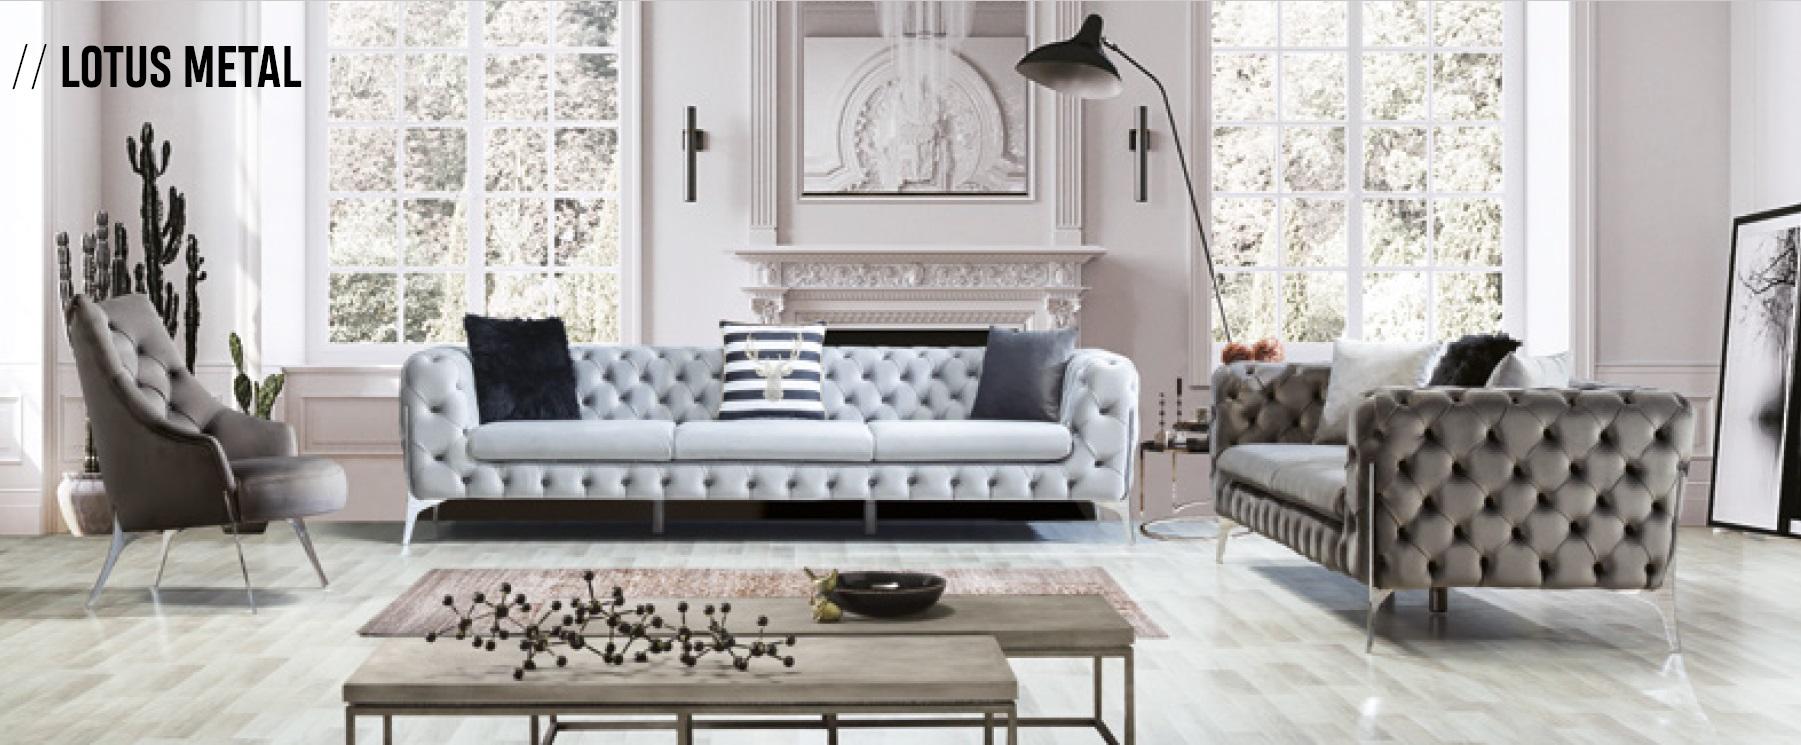 Sofa 4 Sitzer Weiß Luxus Möbel Chesterfield Möbel Textil Klassische Stil Neu